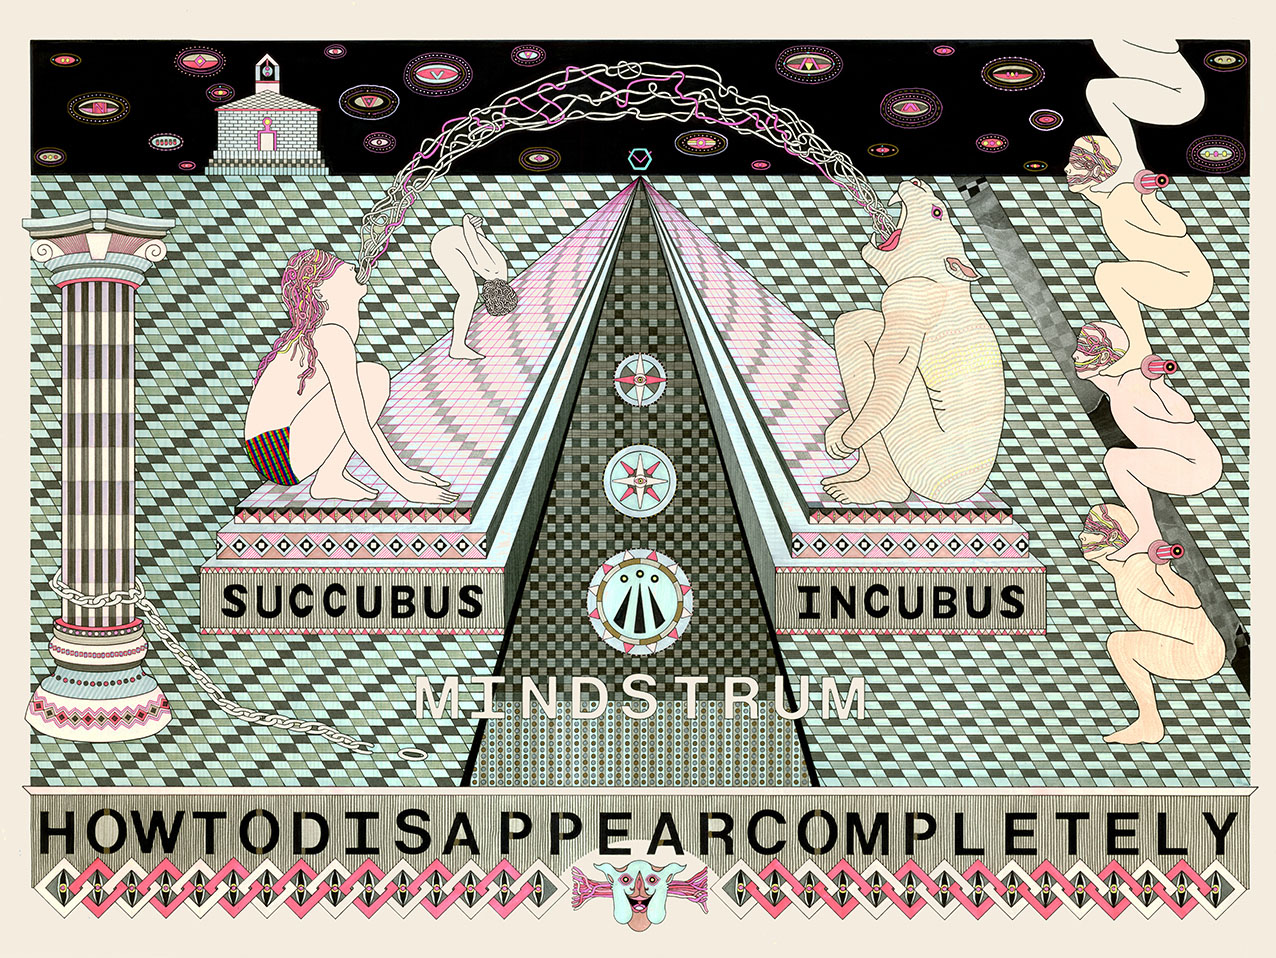 Succubus vs Incubus, 2013 